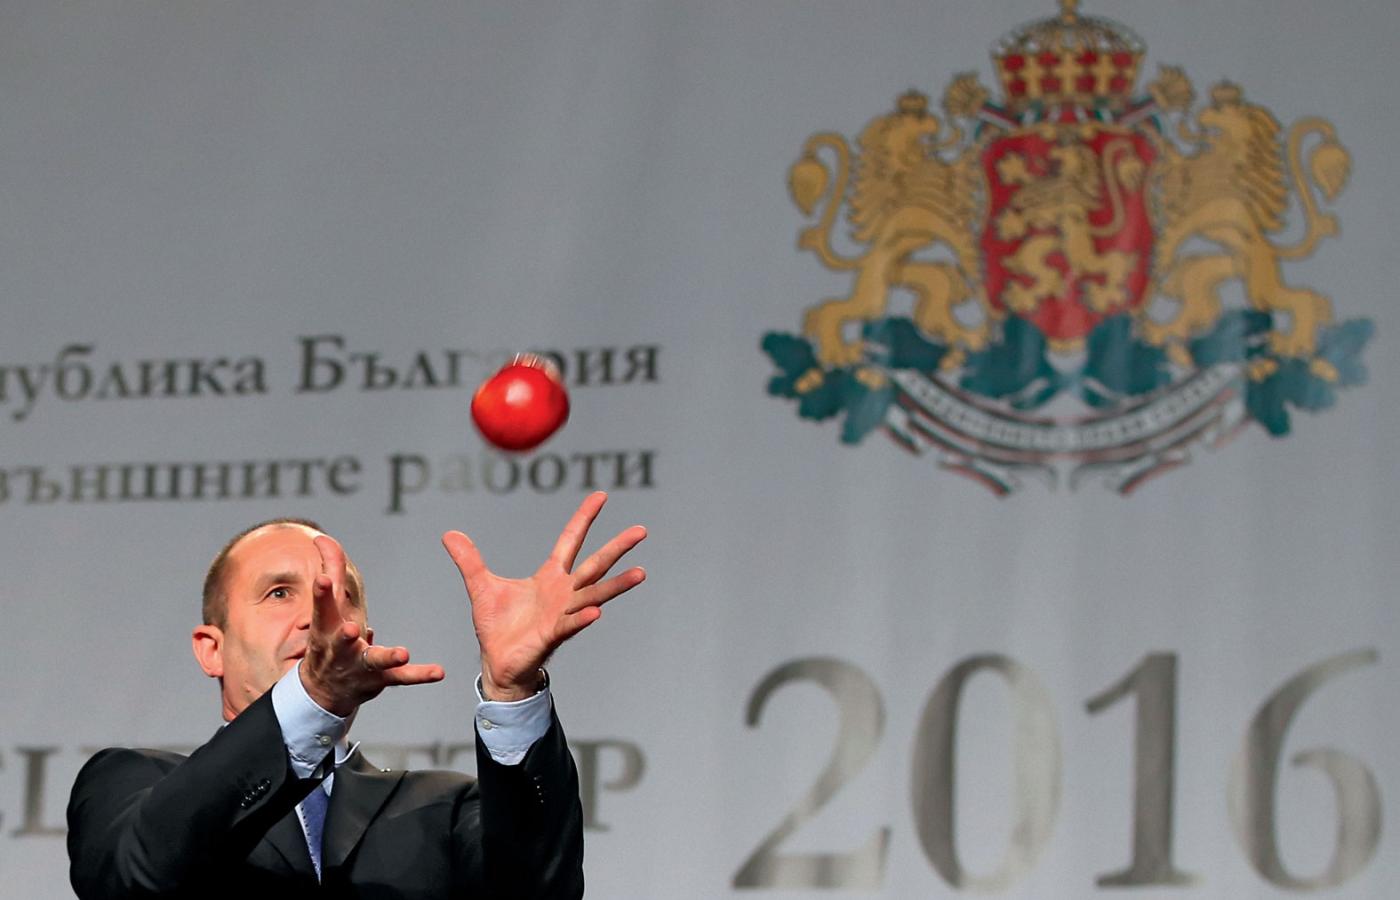 Nowy prezydent Bułgarii – Rumen Radew